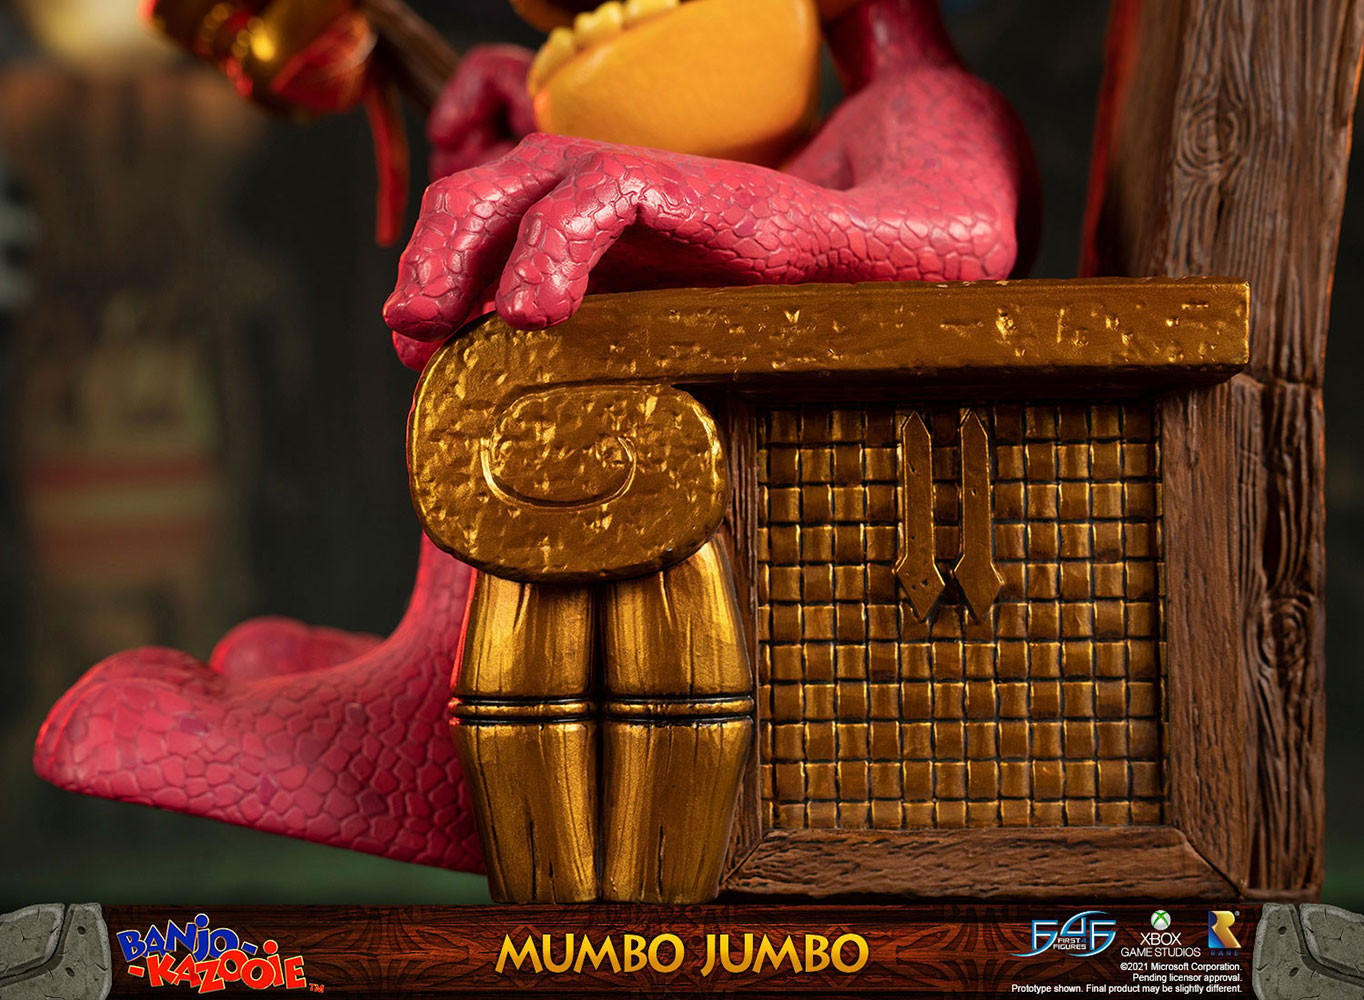 Mumbo Jumbo (Standard Edition)- Prototype Shown